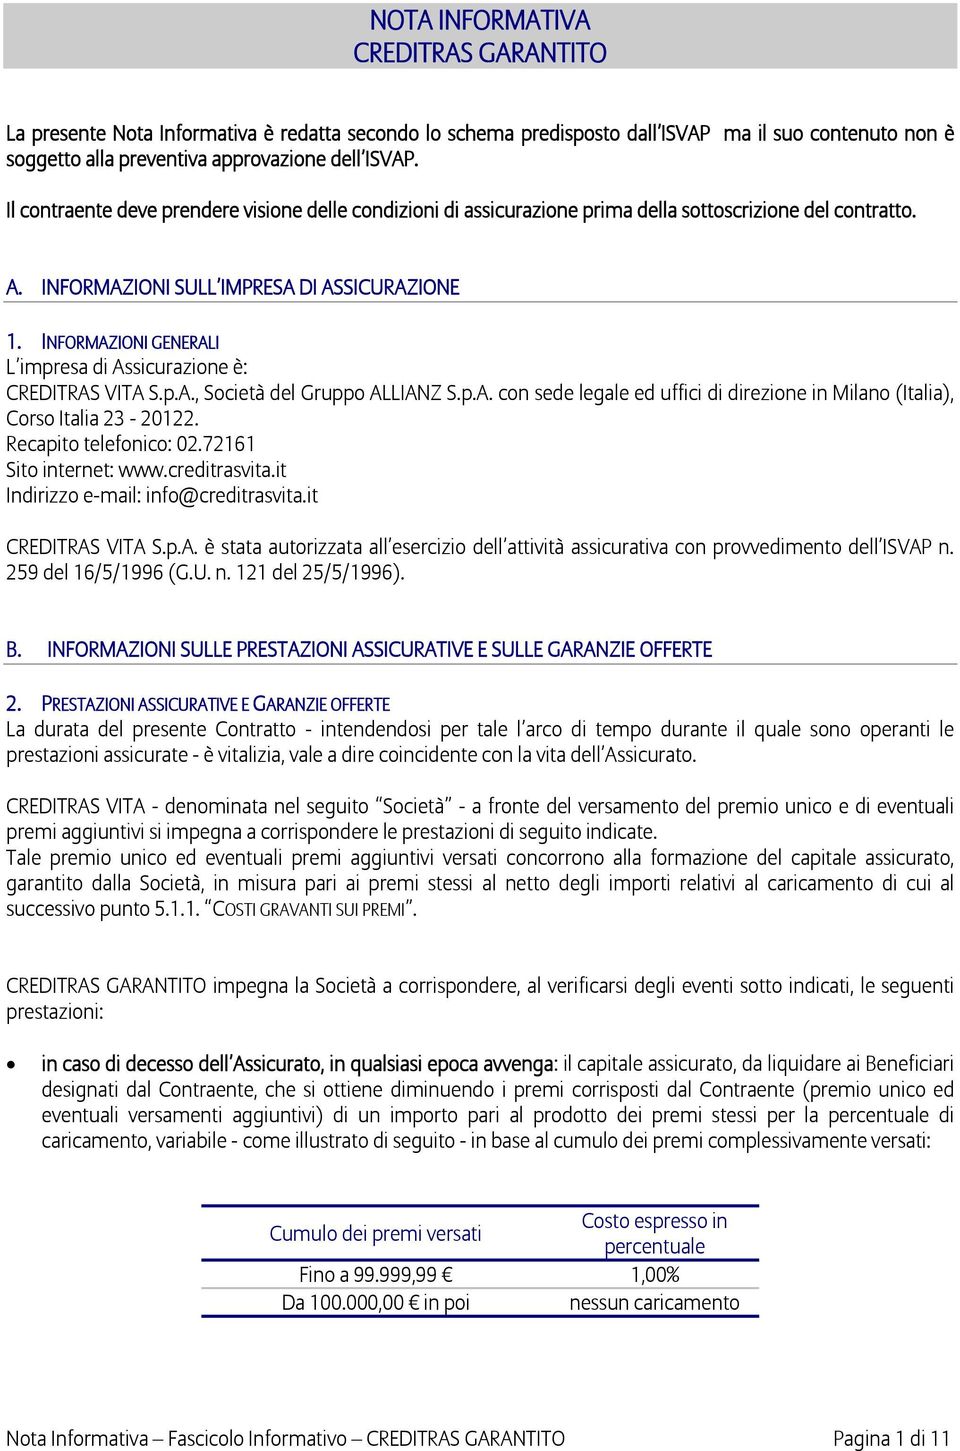 INFORMAZIONI GENERALI L impresa di Assicurazione è: CREDITRAS VITA S.p.A., Società del Gruppo ALLIANZ S.p.A. con sede legale ed uffici di direzione in Milano (Italia), Corso Italia 23-20122.